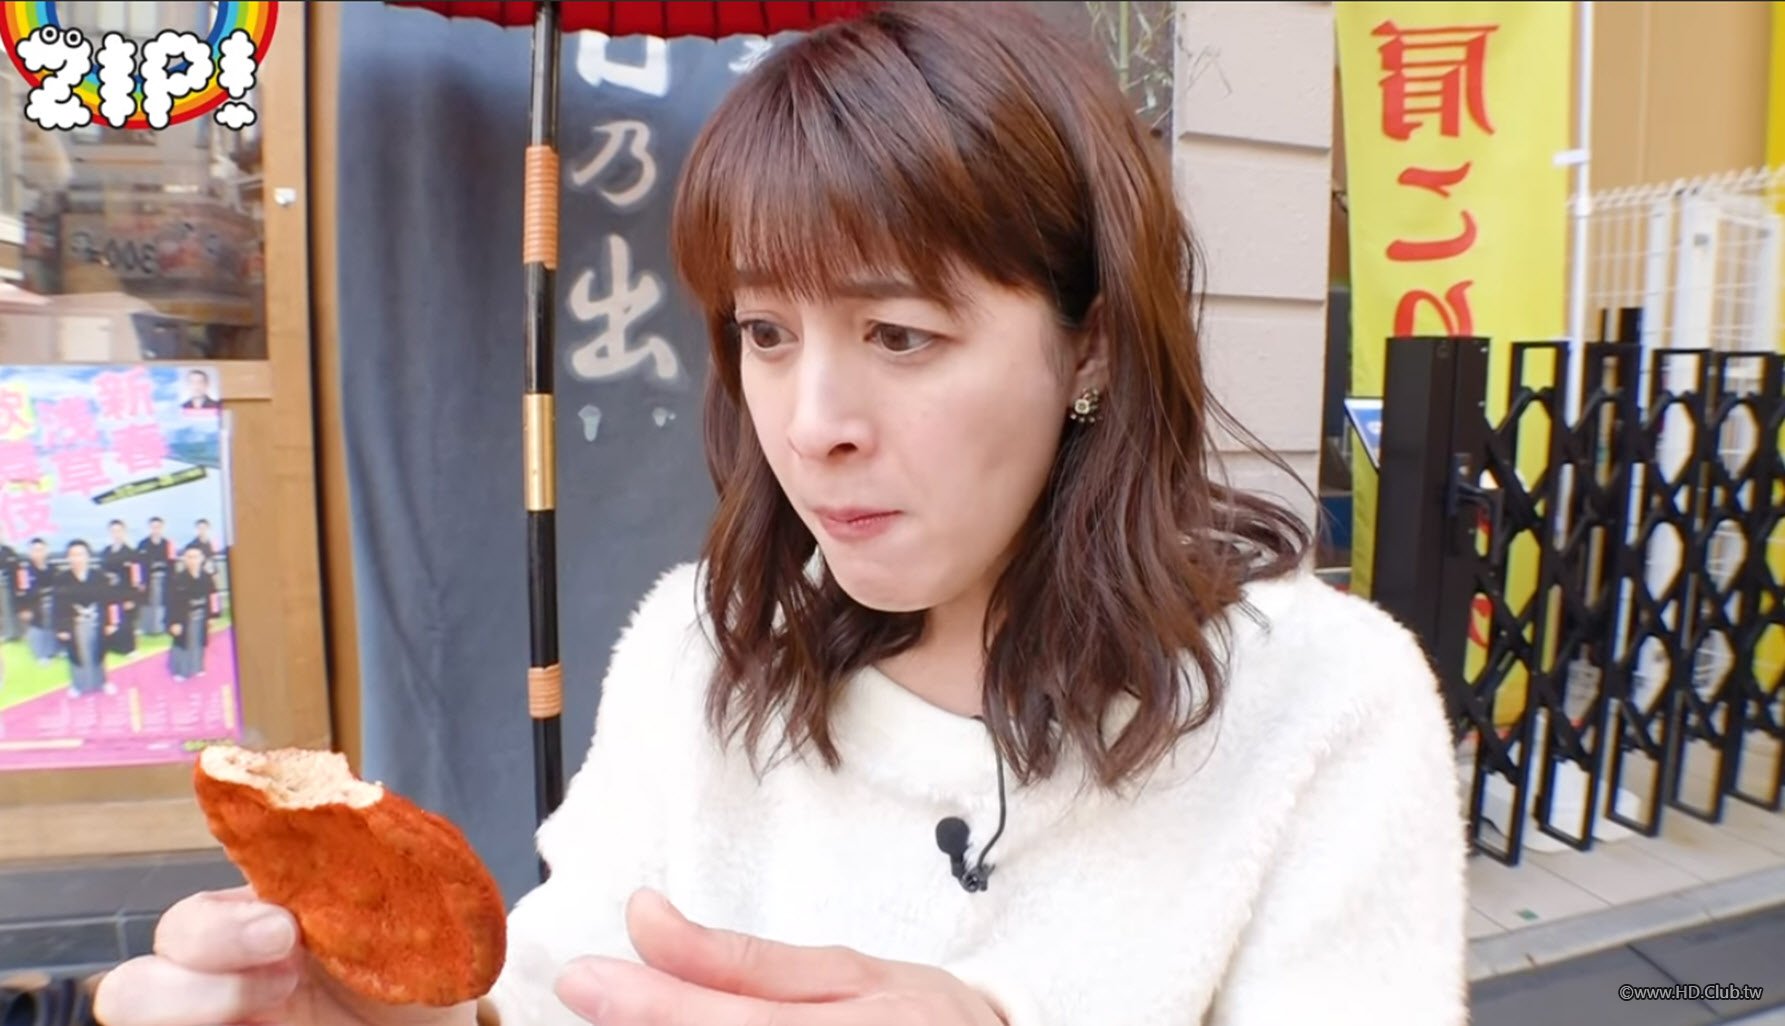 Senbei-Eating-Report-by-Arisa-Ushiro-後呂有紗-NTV-ZIP-2018-01.jpg